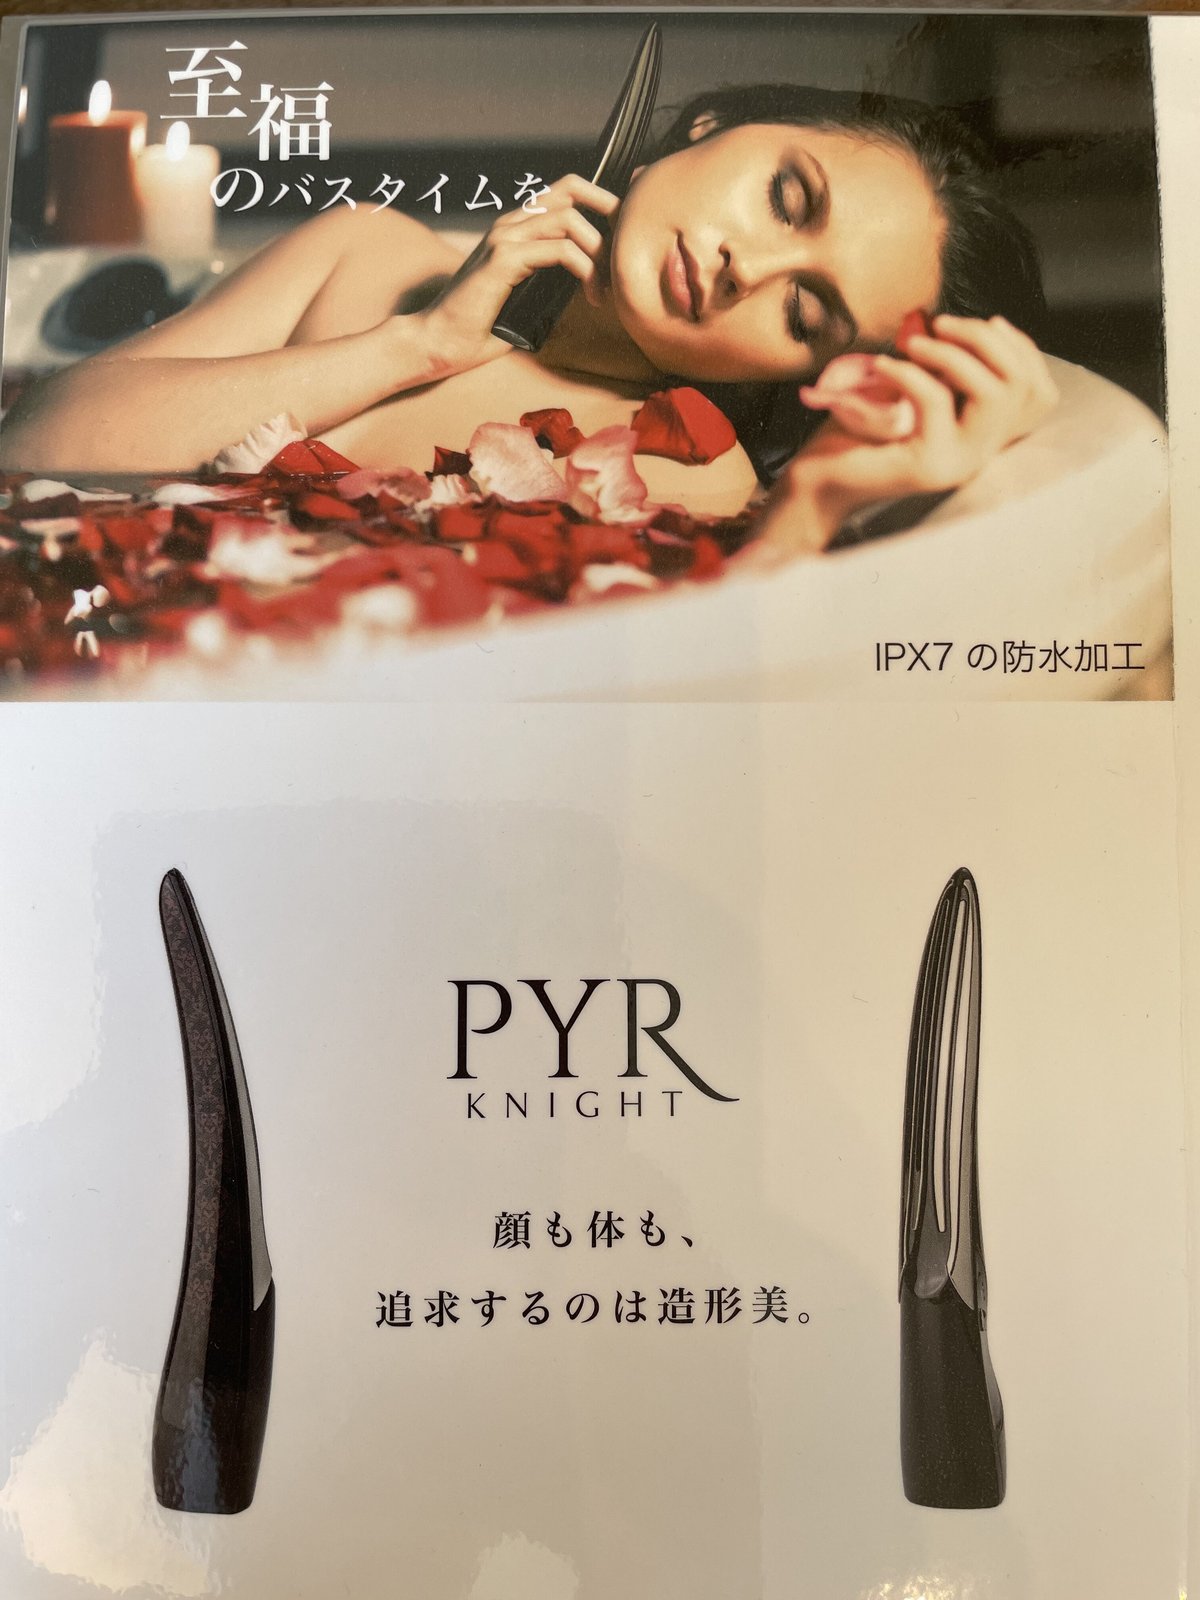 パイラナイト PYR KNIGHT 美顔器 - 美容機器